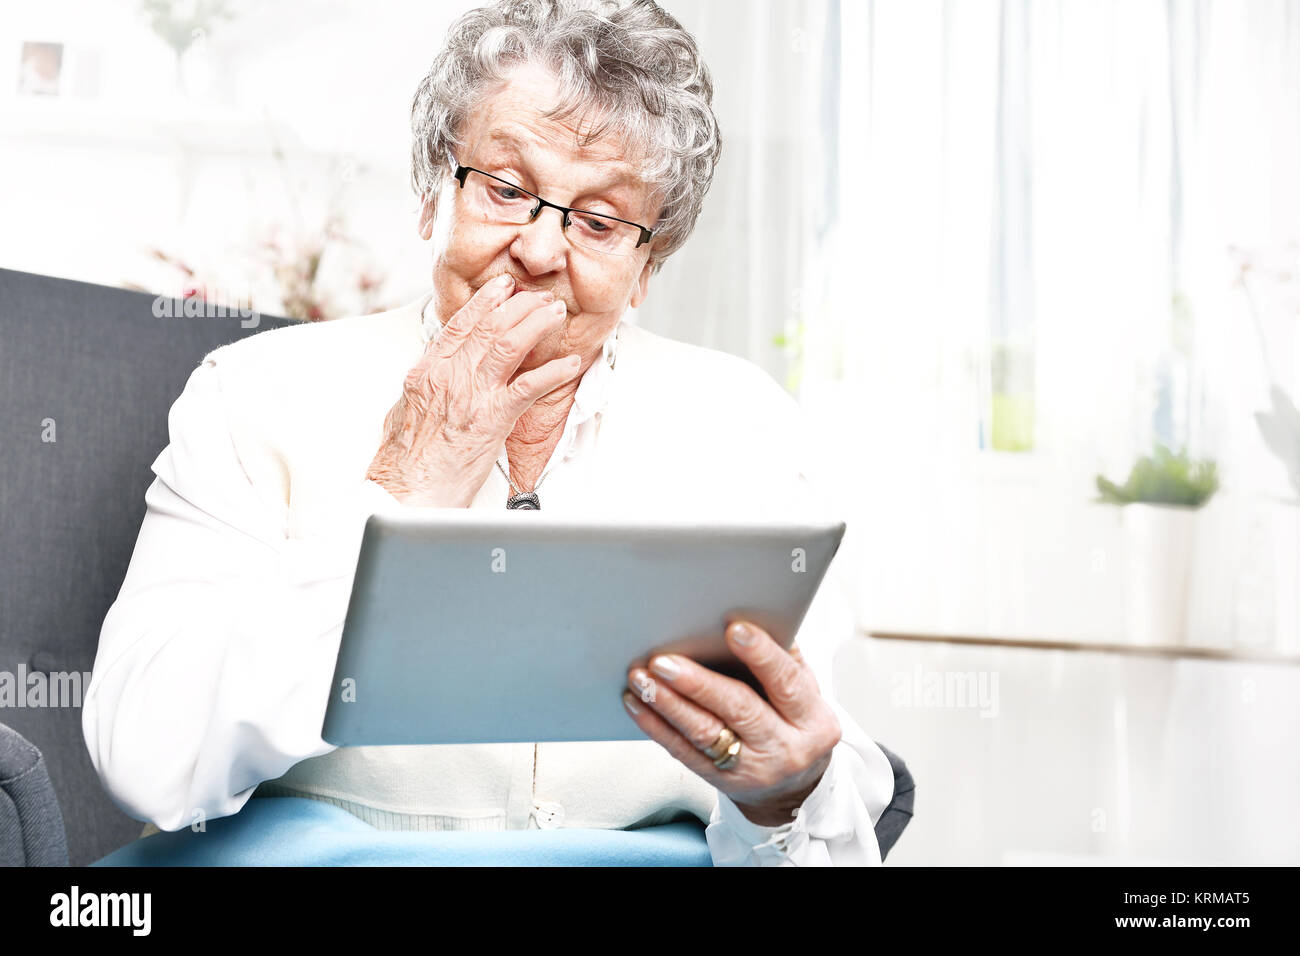 Oma und dem Computer. reife Frau mit einem Tablet. pensionierte,  Unterhaltung im Internet Stockfotografie - Alamy